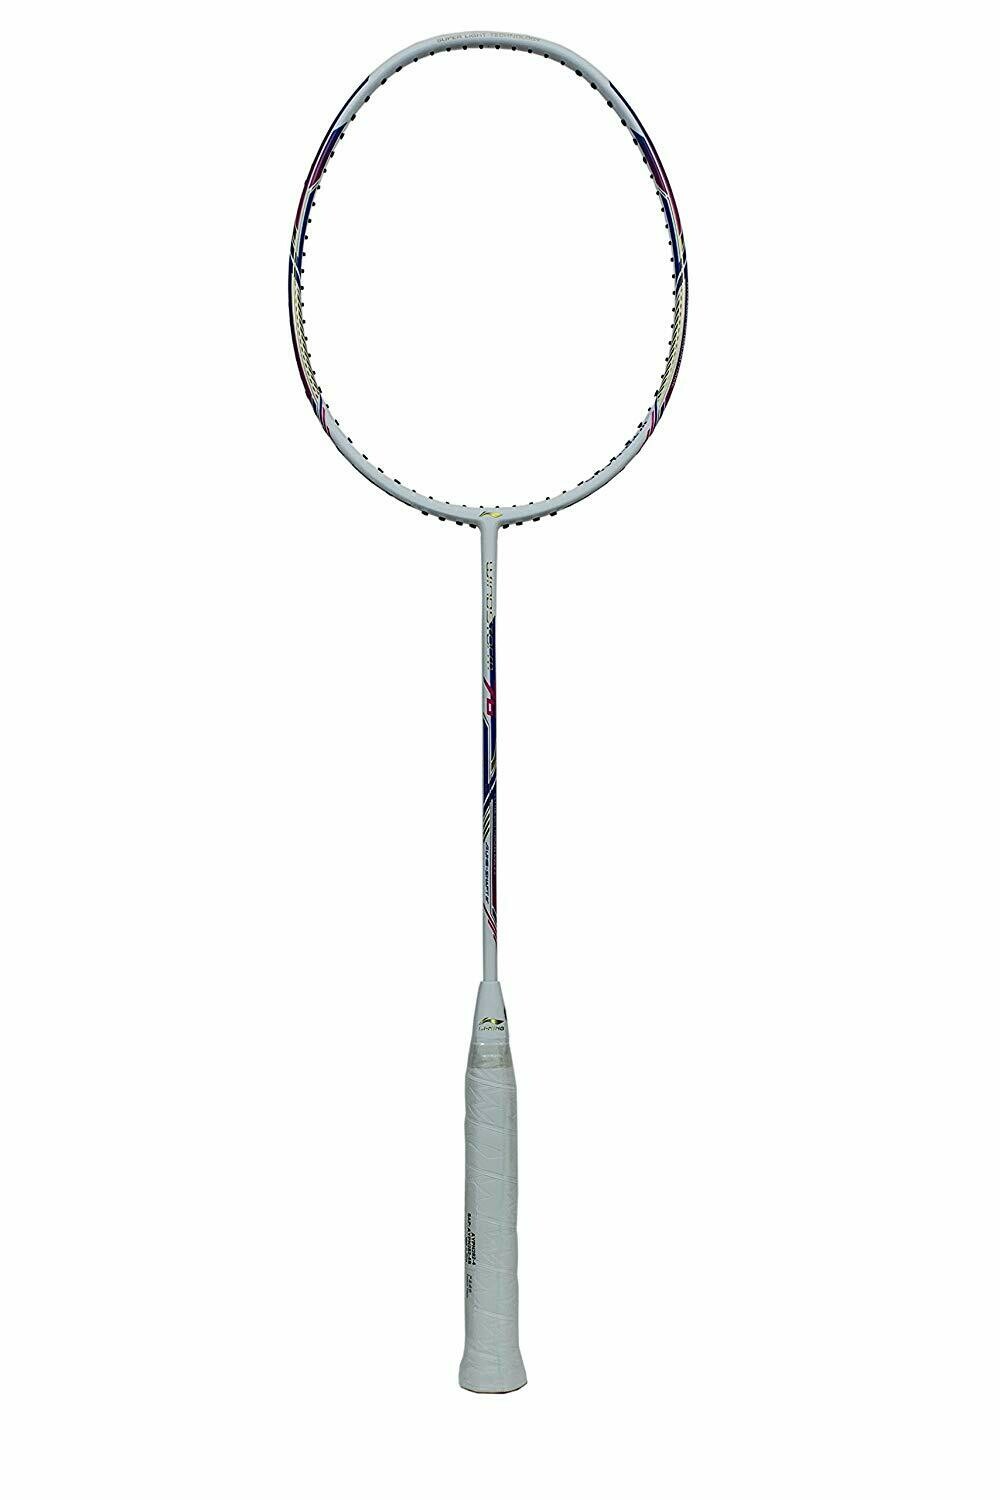 LI-NING Windstorm 76 Wihte Badminton Racquet